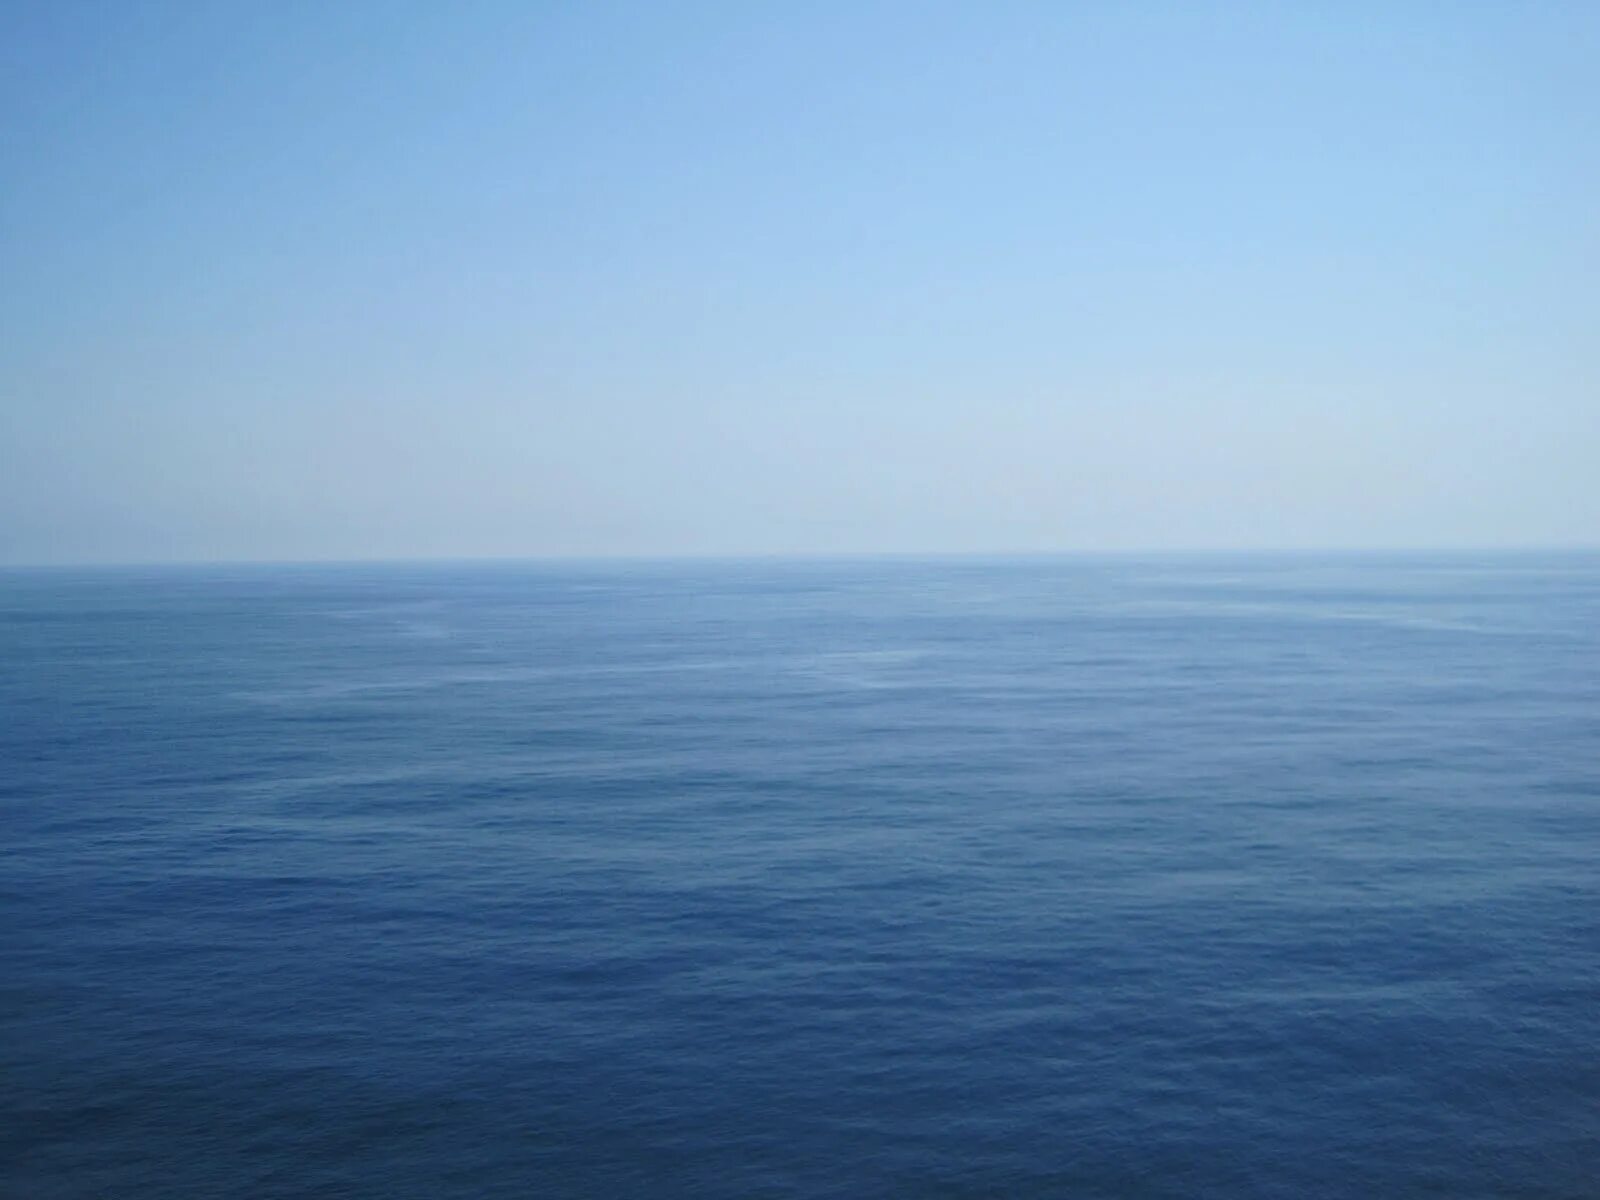 Белый пр сторный город син е море. Море е.